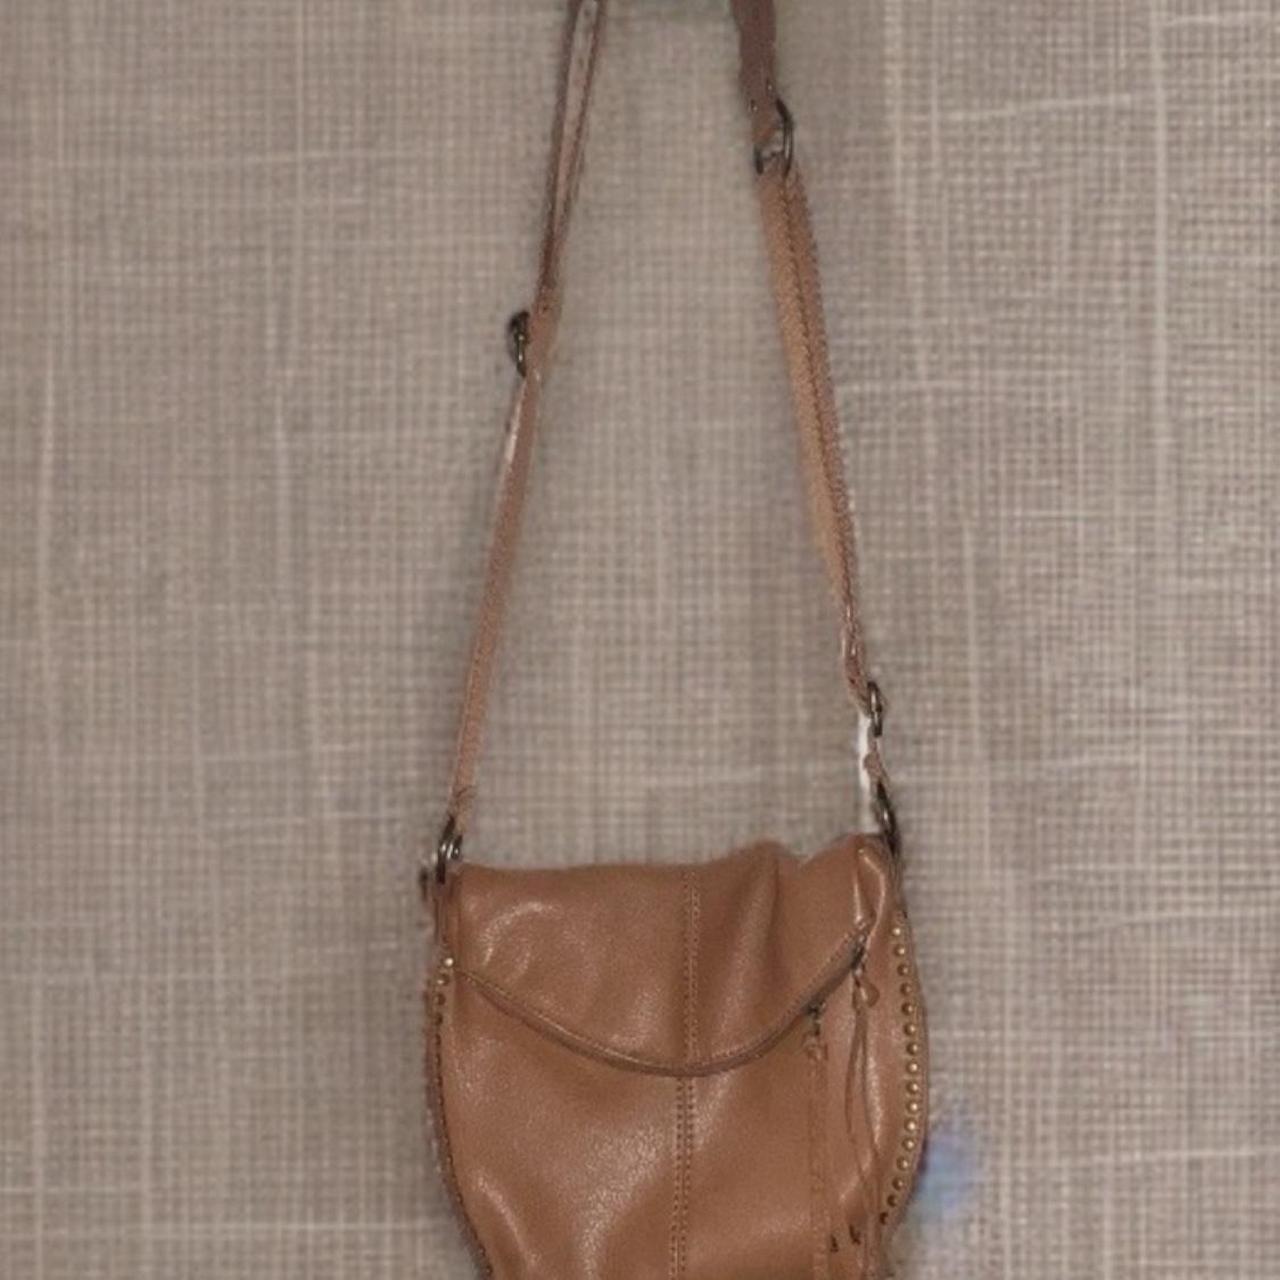 The Sak Black Leather Crossbody bag adjustable strap... - Depop